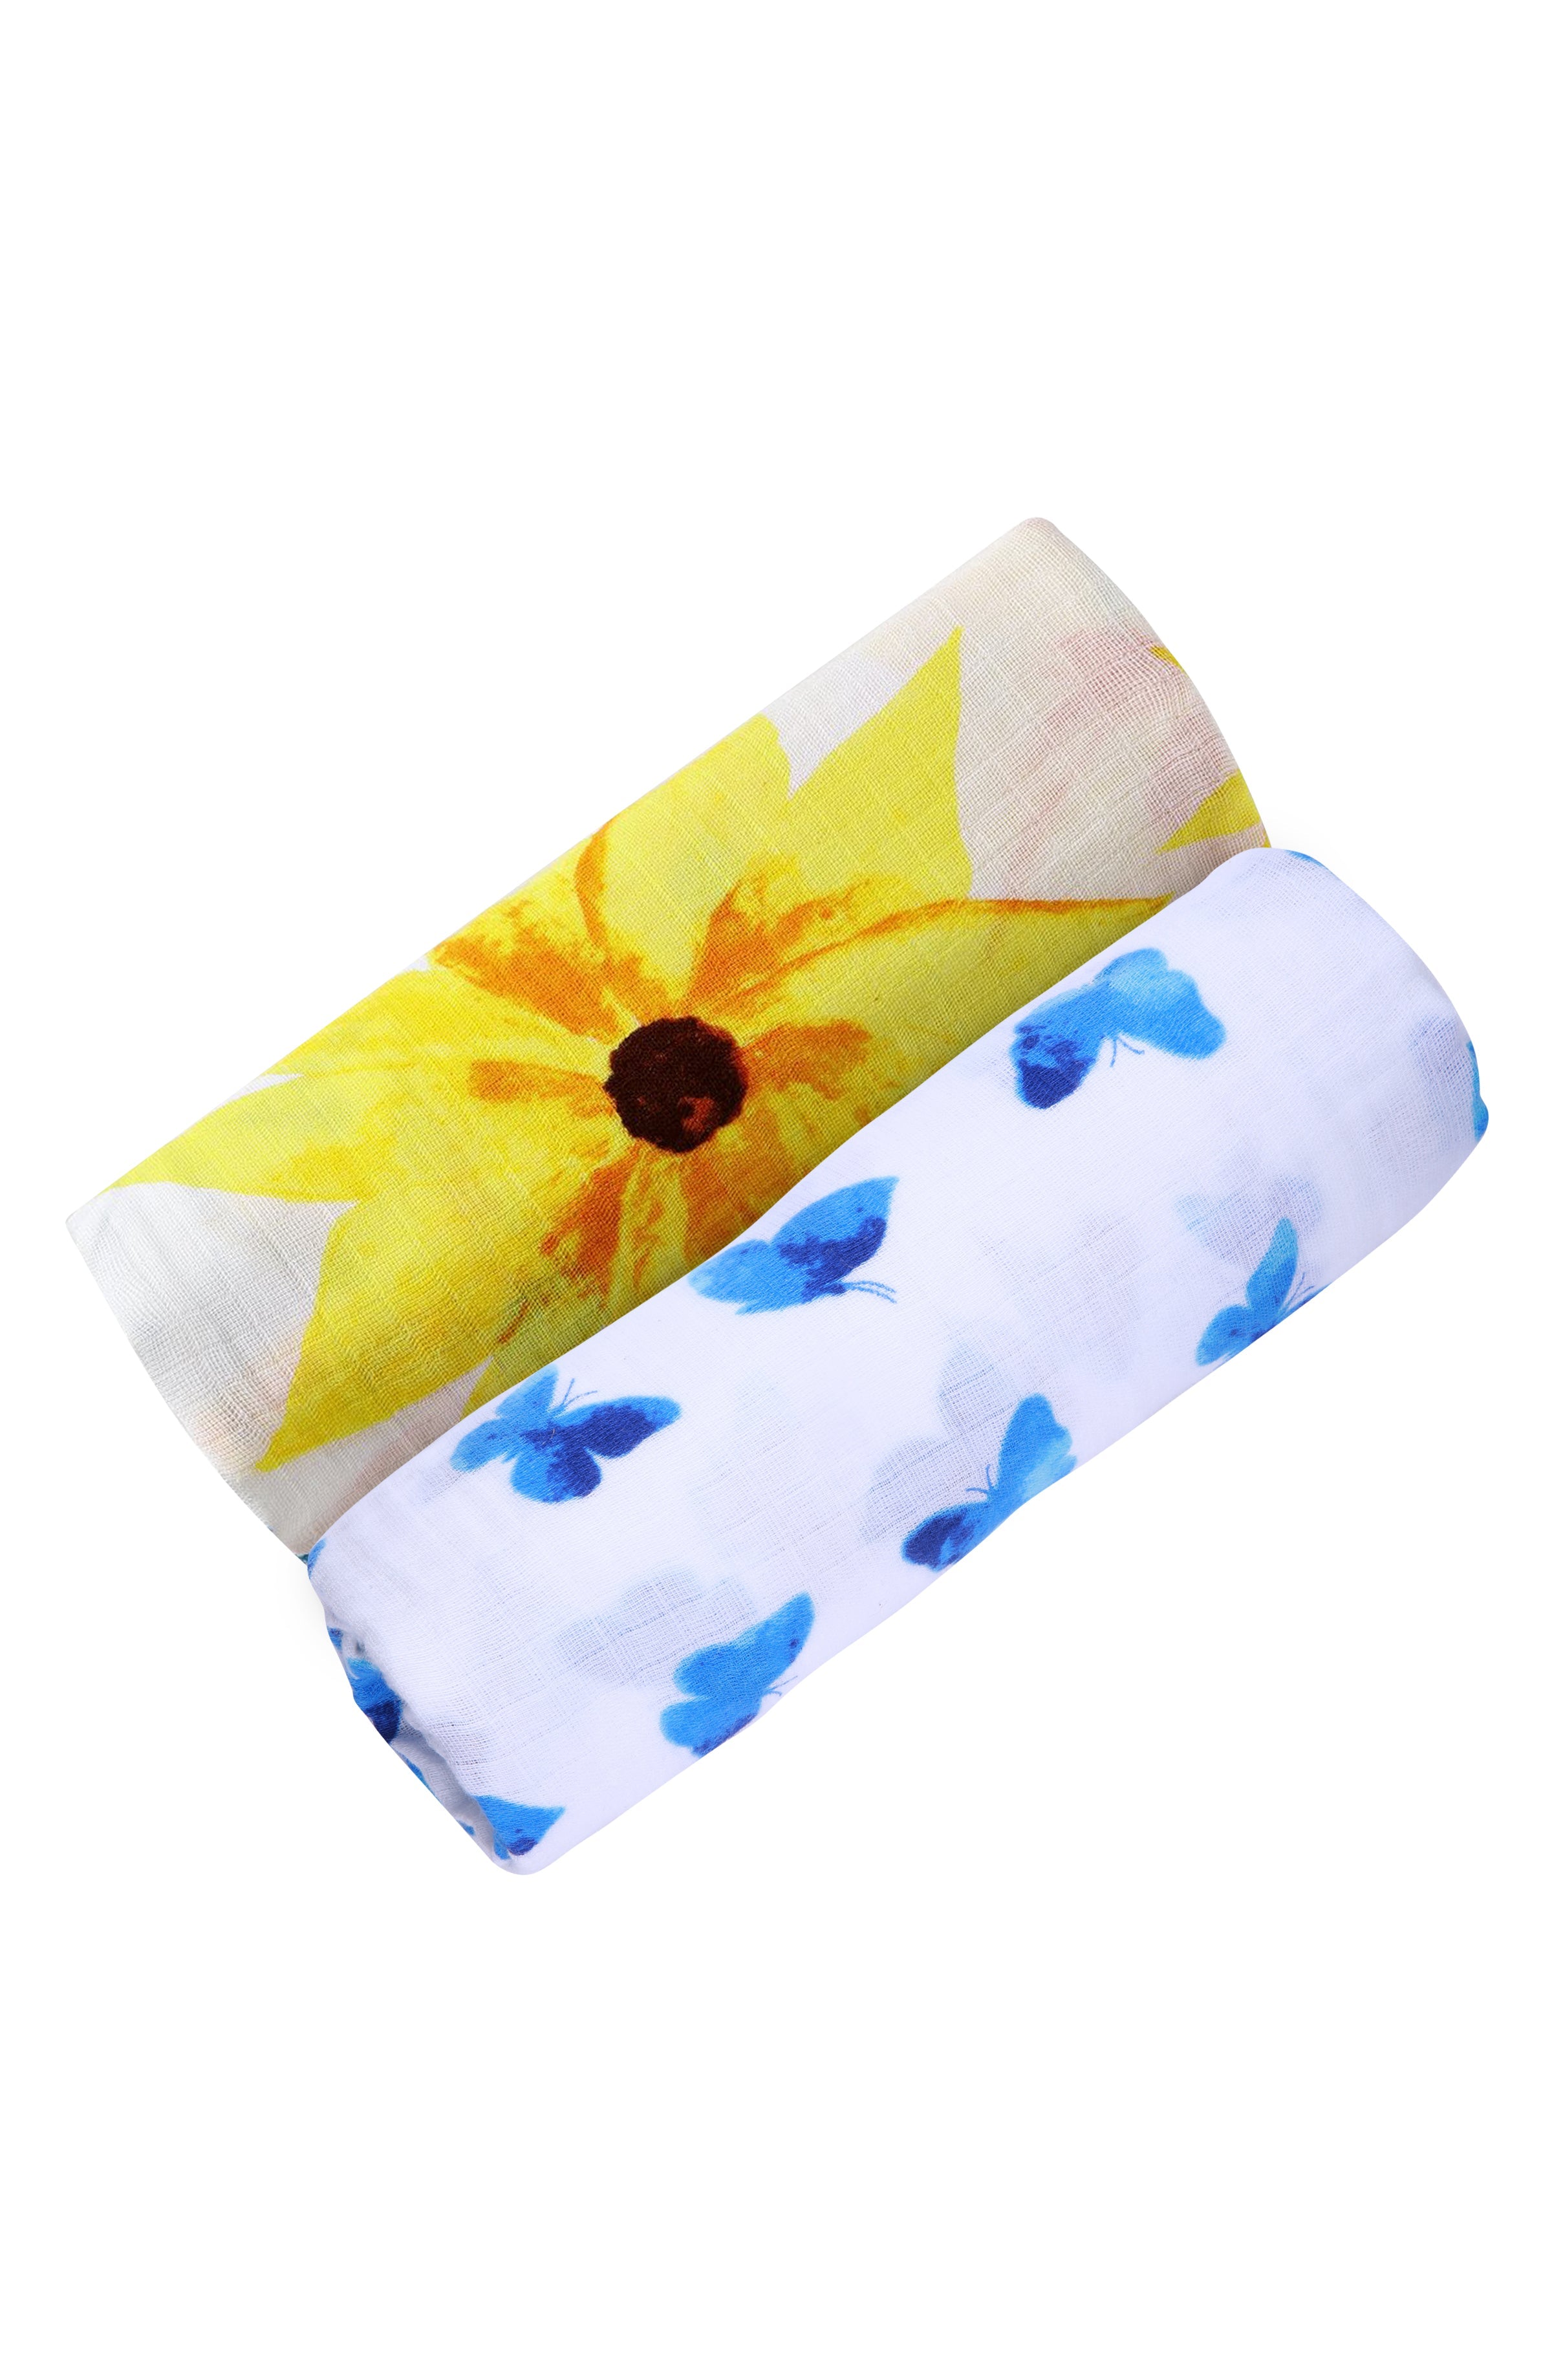 ORGANIC SWADDLE SET - GLOWING GARDEN (Sunflower + Blue Butterfly)